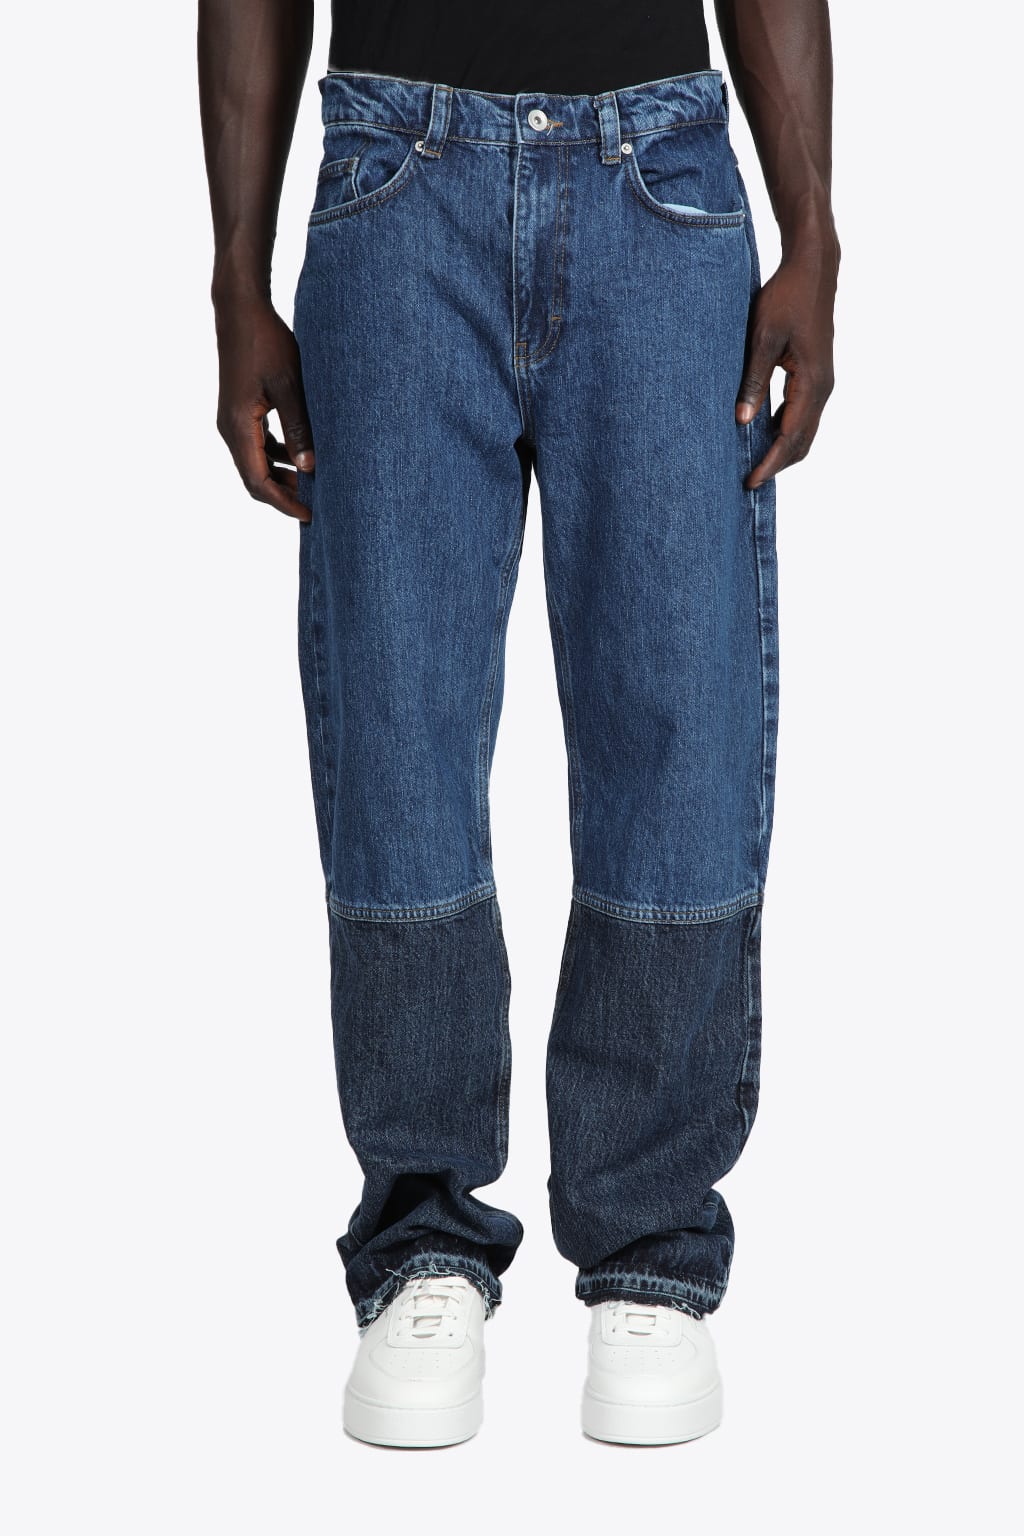 Axel Arigato Archive Jeans Dark blue denim baggy pants - Archive jeans